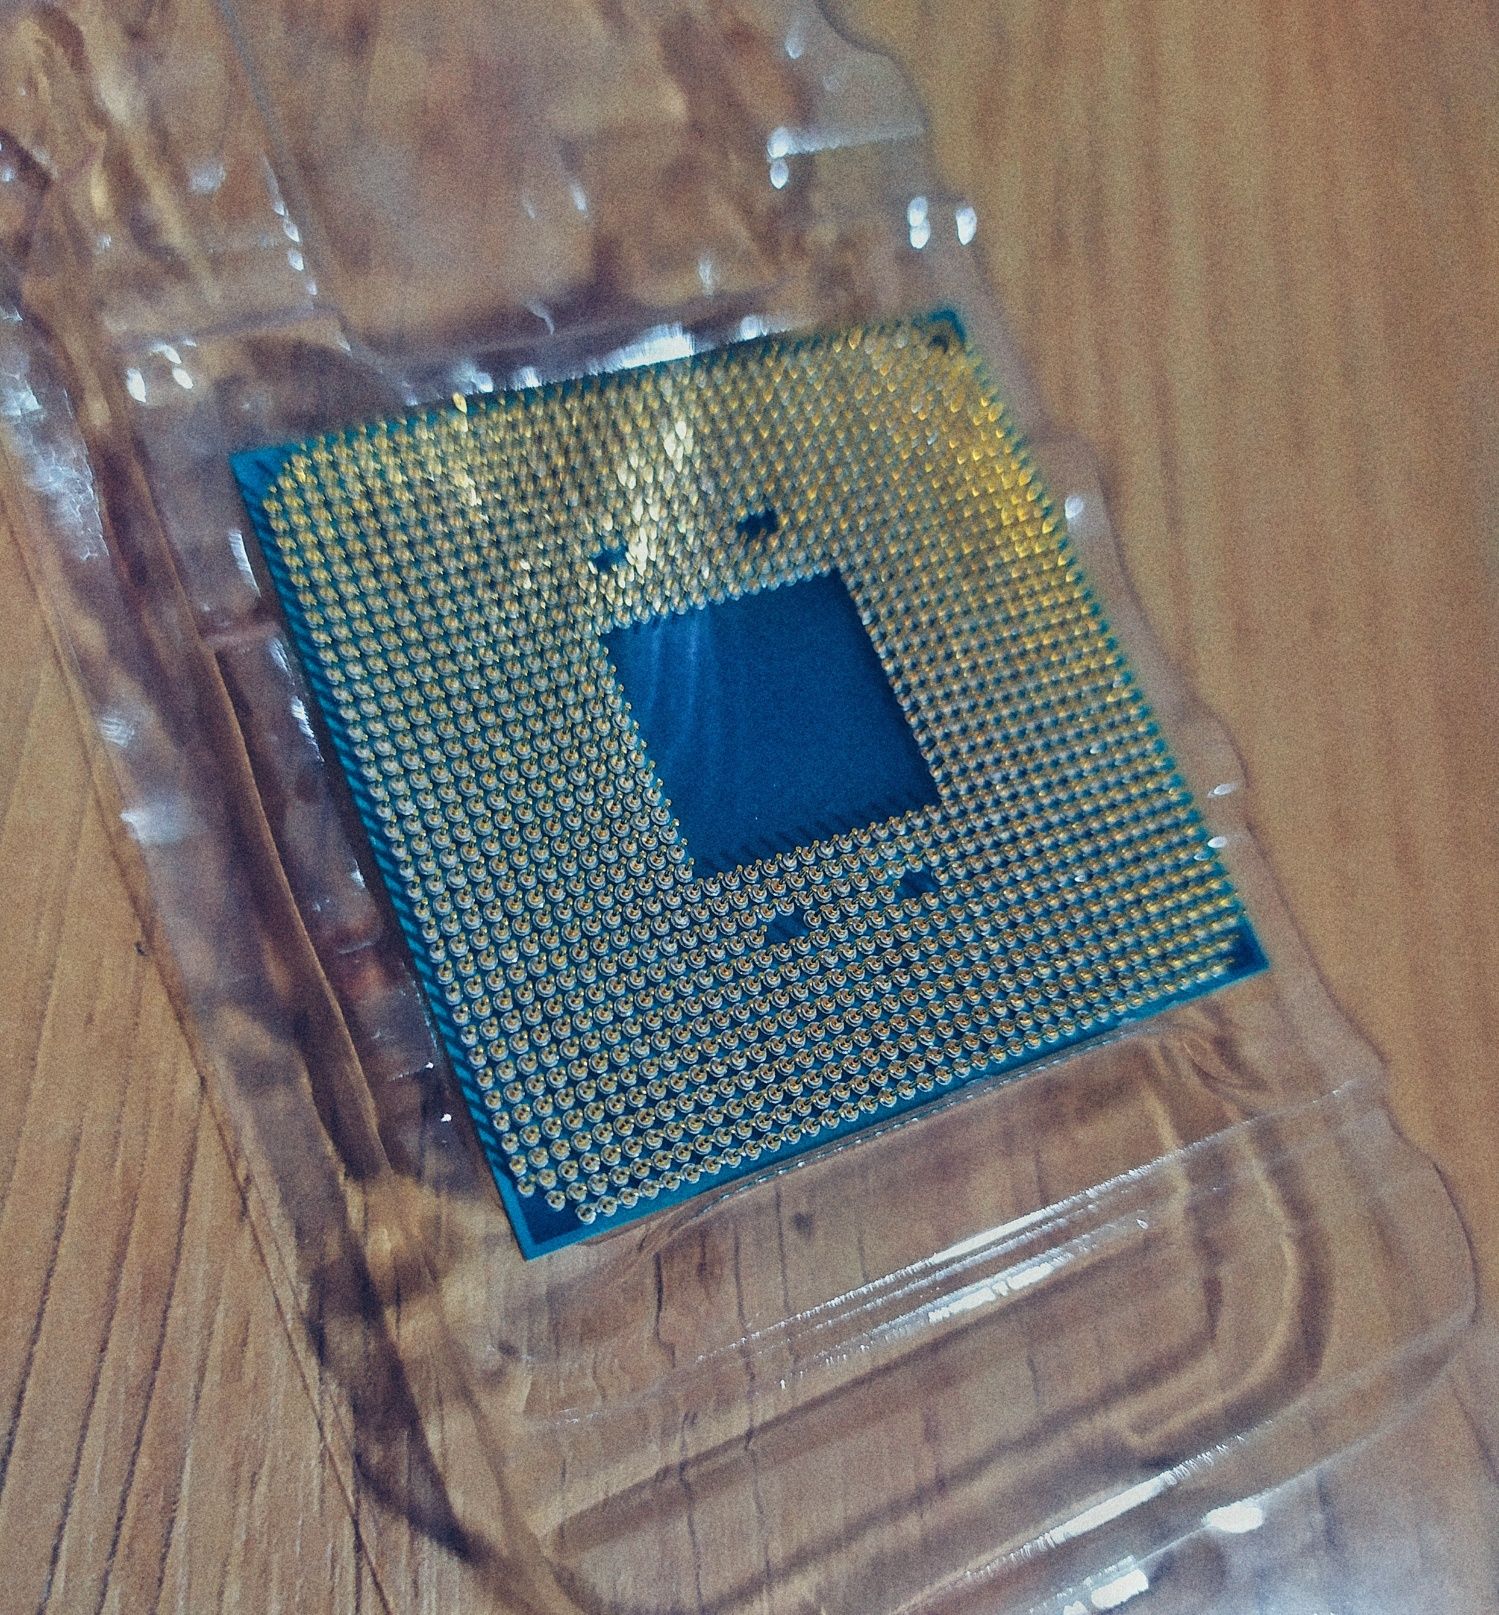 Processador AMD RYZEN 5 2600 Hexa-core